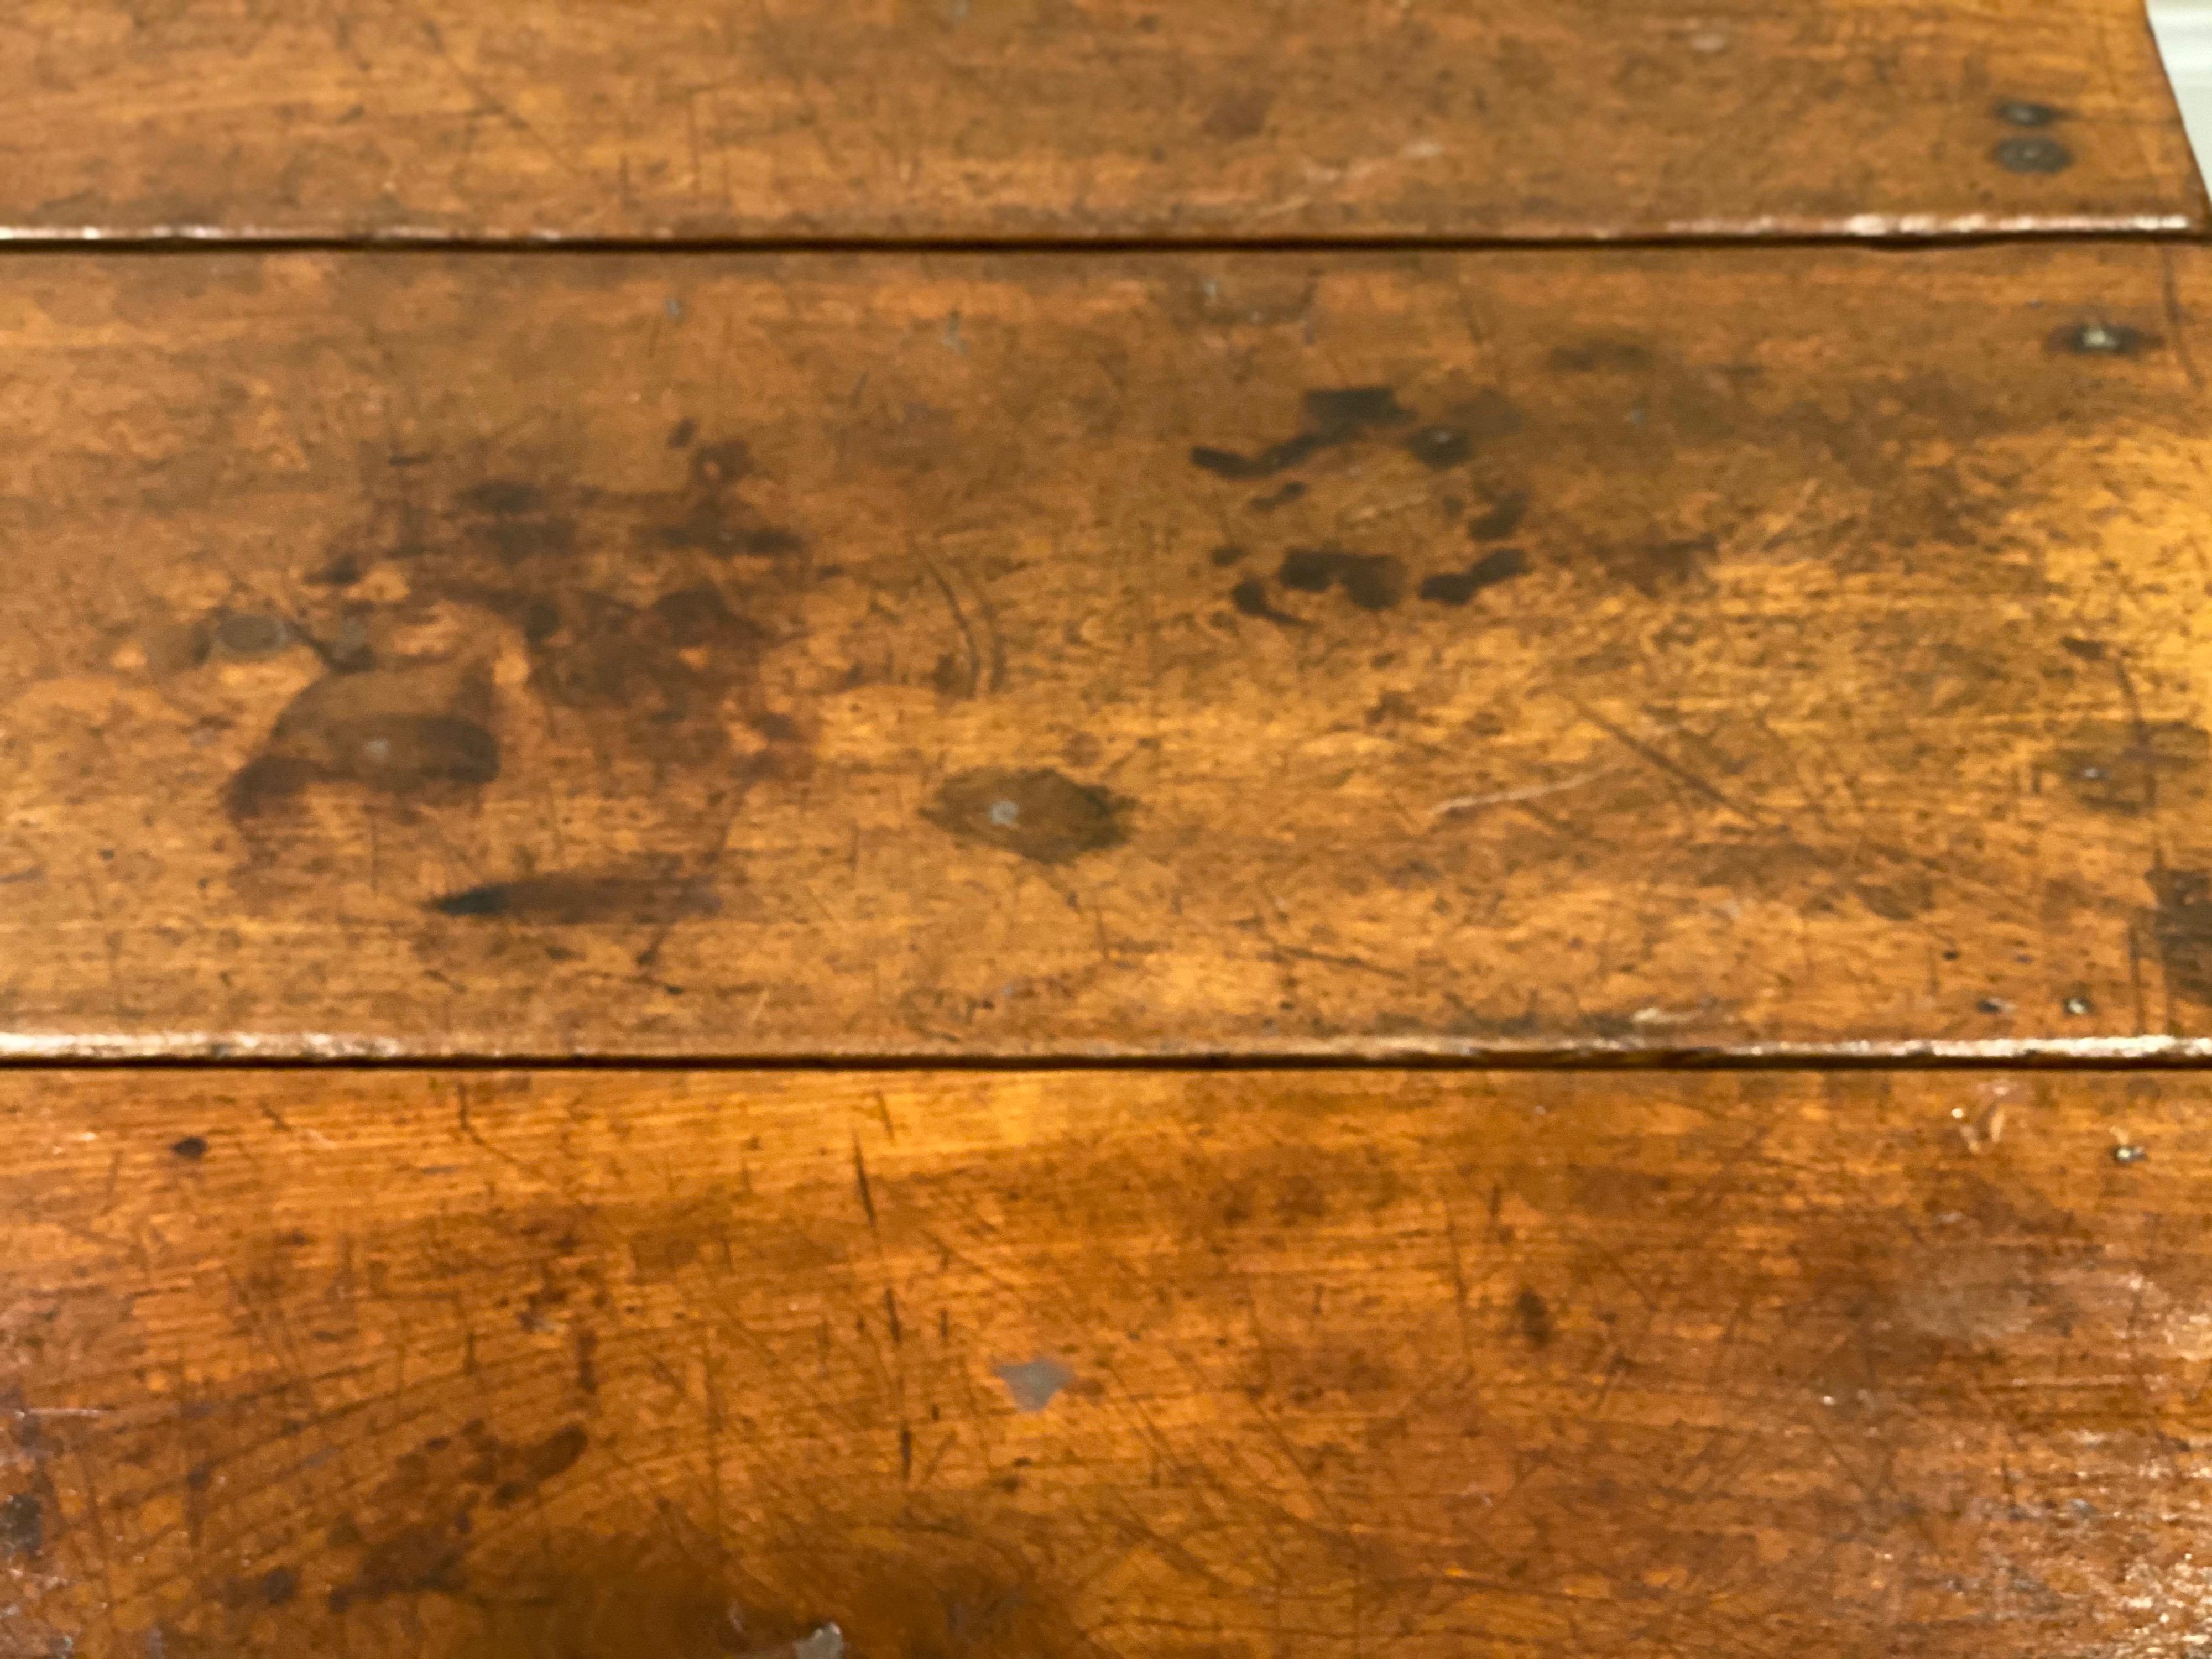 table à abattant en acajou américain du XIXe siècle
Pieds droits fuselés, un tiroir, plateau de maintien à bras pivotant de chaque côté.
Légère séparation en haut, décolorations, légère courbure en haut. Belle patine et bel âge. Structurellement